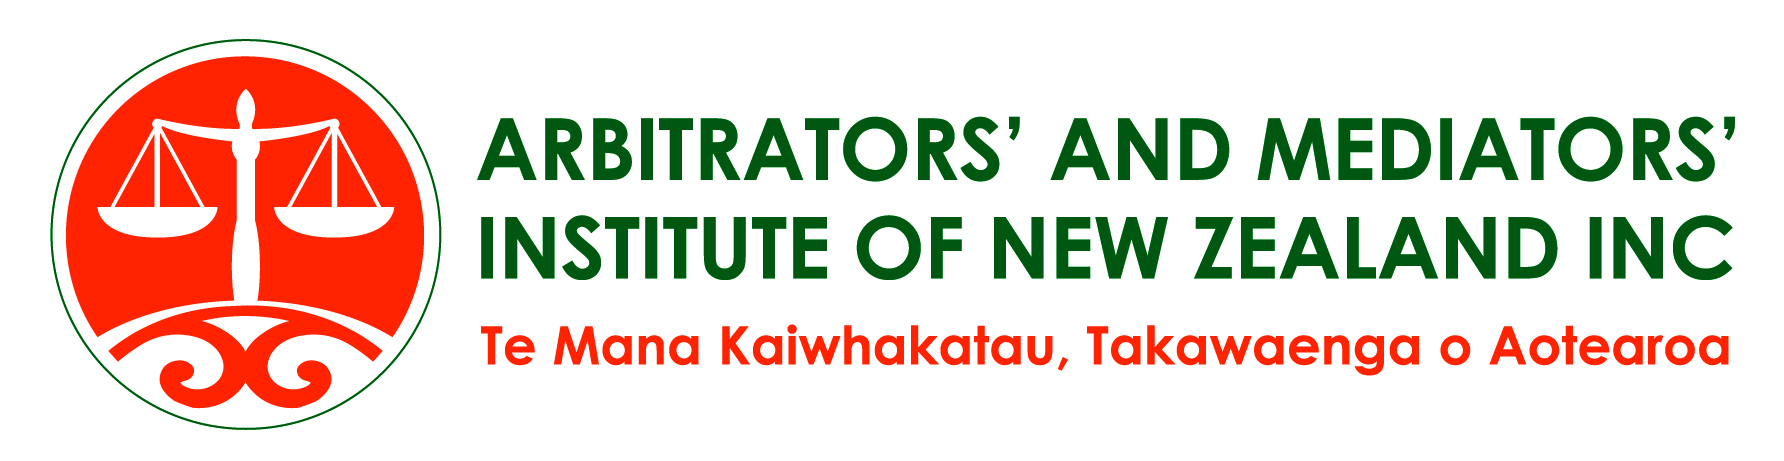 Arbitrators and Mediators